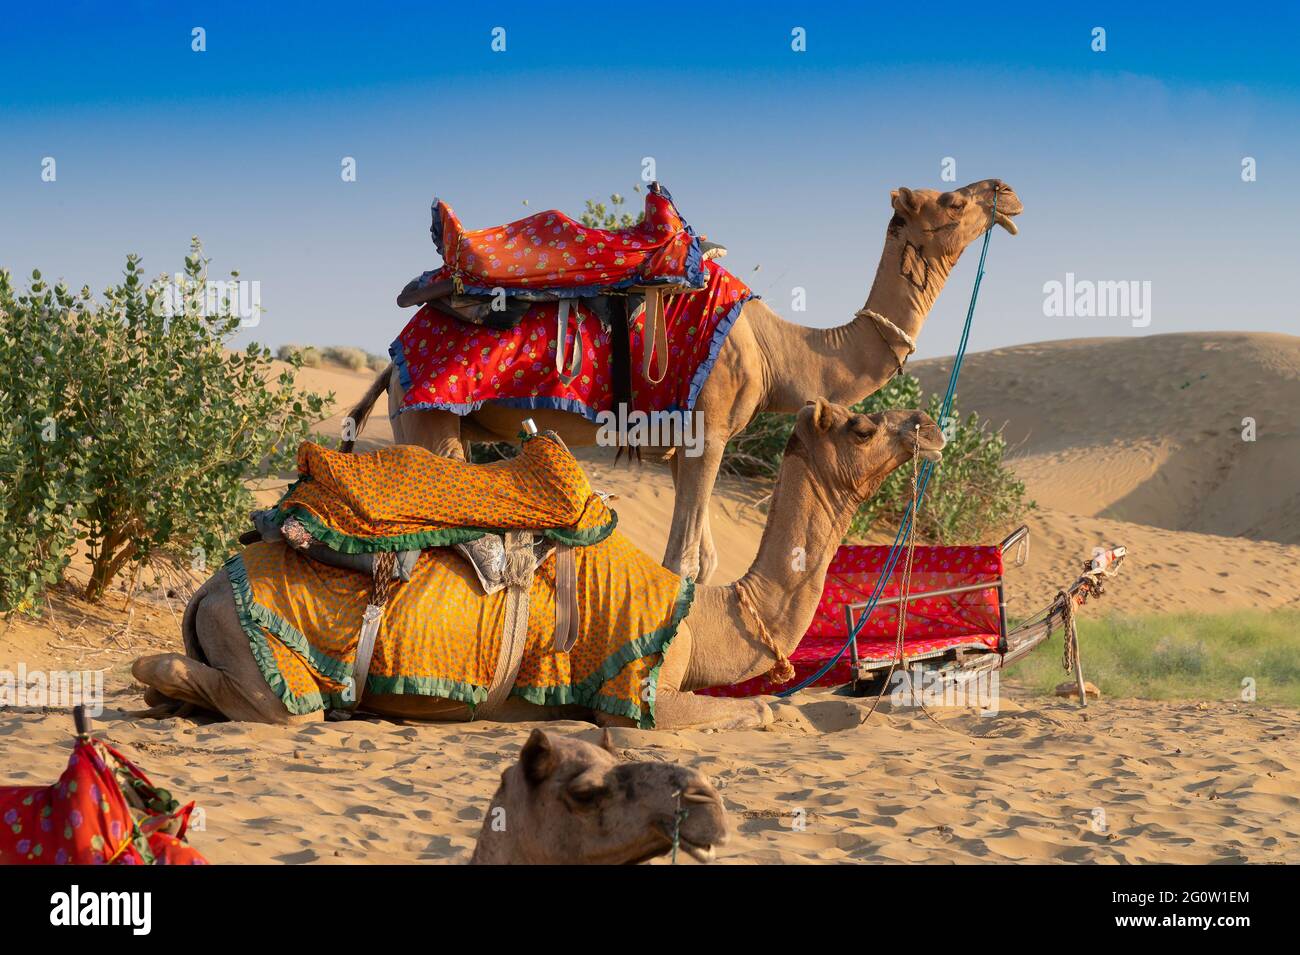 Kamele, Camelus dromedarius, sind große, gleichgezäunte Wüstentiere mit einem Buckel auf dem Rücken.zwei Kamele mit traditionellen Kleidern warten auf Touristen Stockfoto